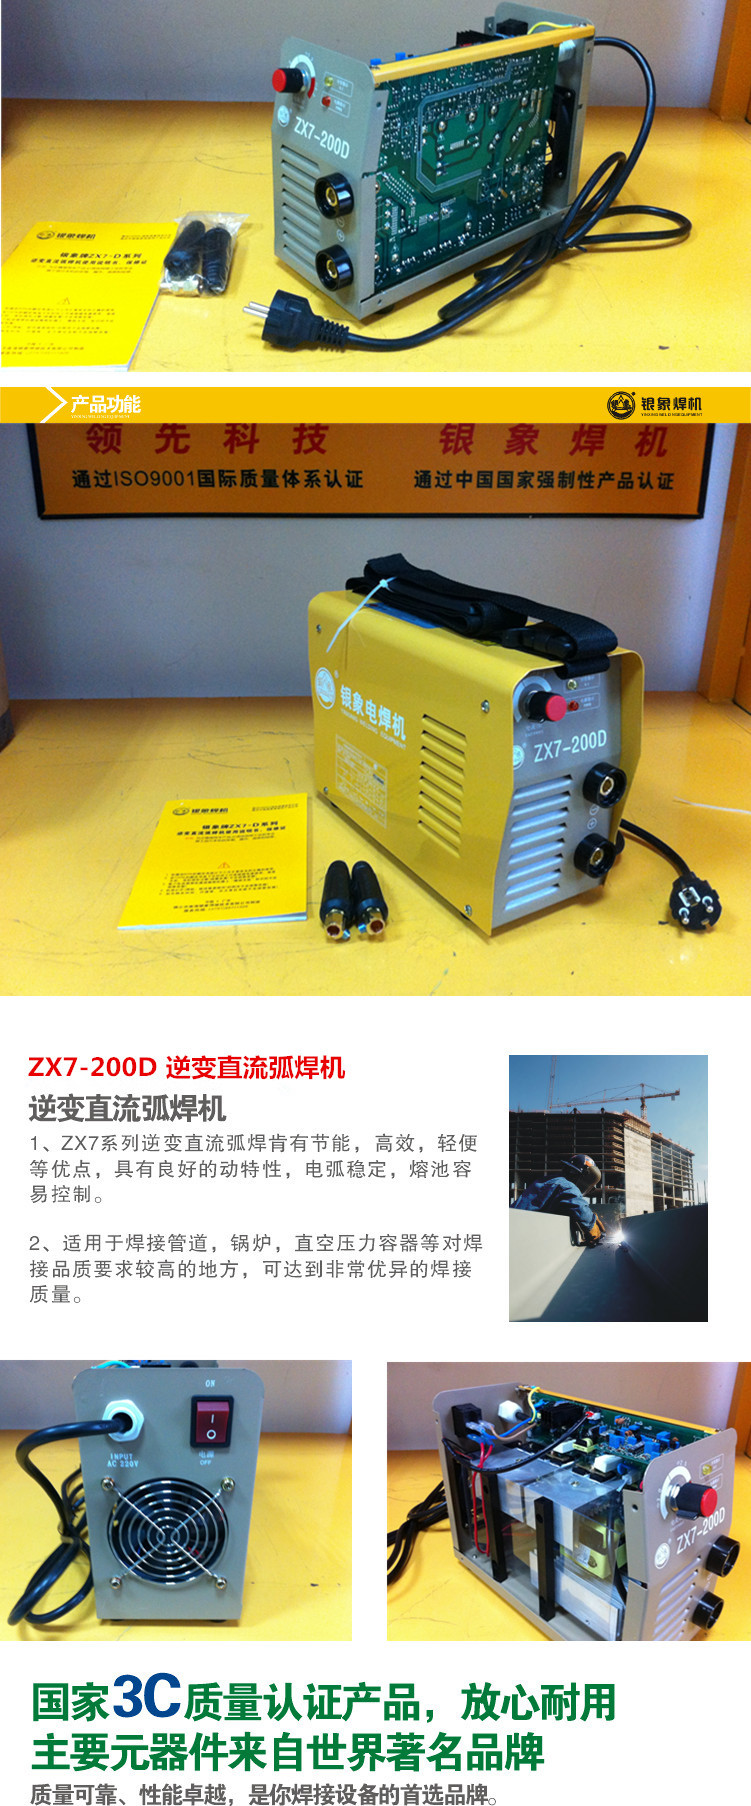 1 ZX7-200D 介绍